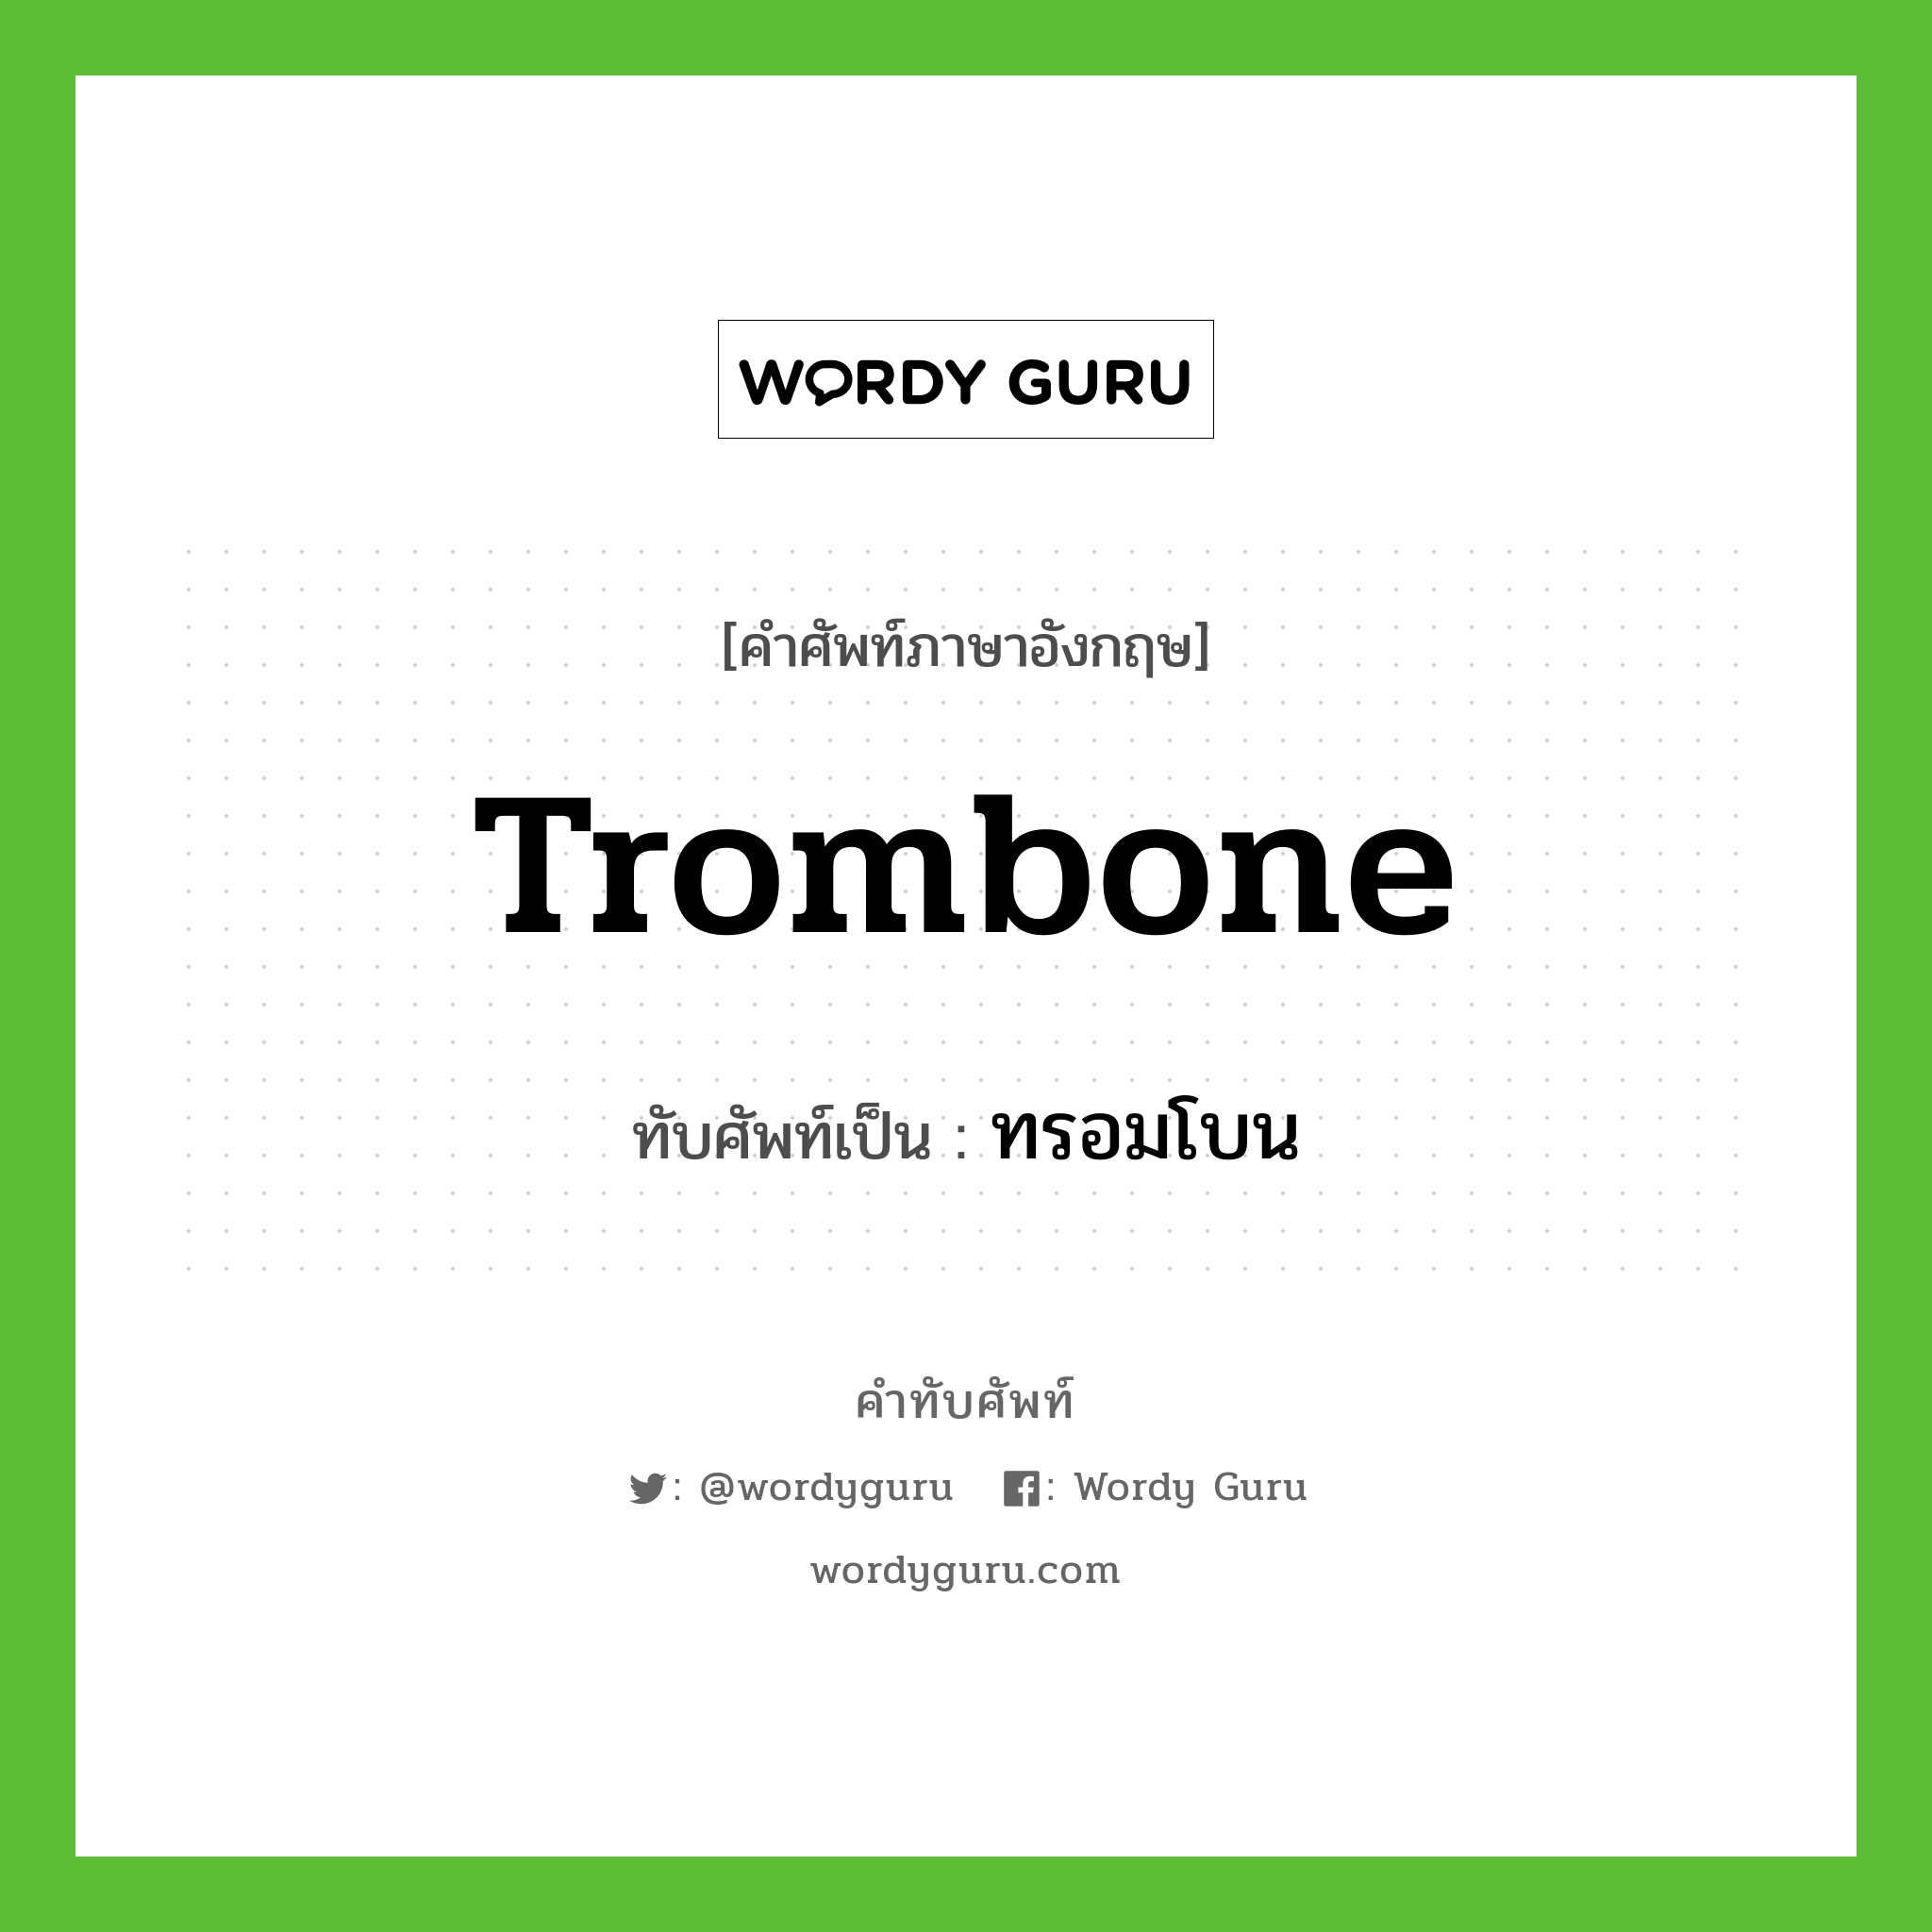 trombone เขียนเป็นคำไทยว่าอะไร?, คำศัพท์ภาษาอังกฤษ trombone ทับศัพท์เป็น ทรอมโบน